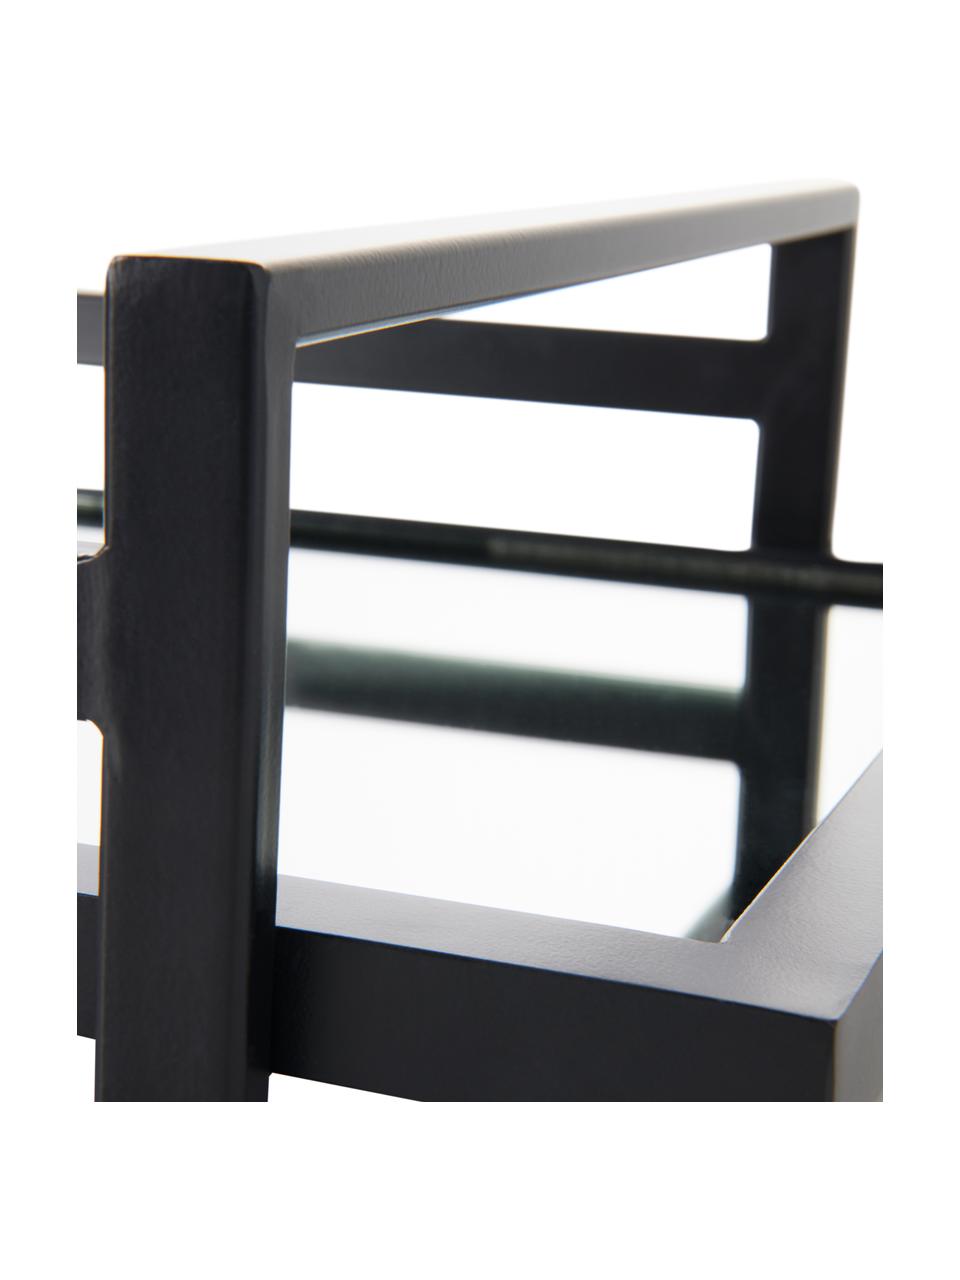 Deko-Tablett Alvy, Rahmen: Metall, beschichtet, Ablagefläche: Spiegelglas, Schwarz, 46 x 13 cm